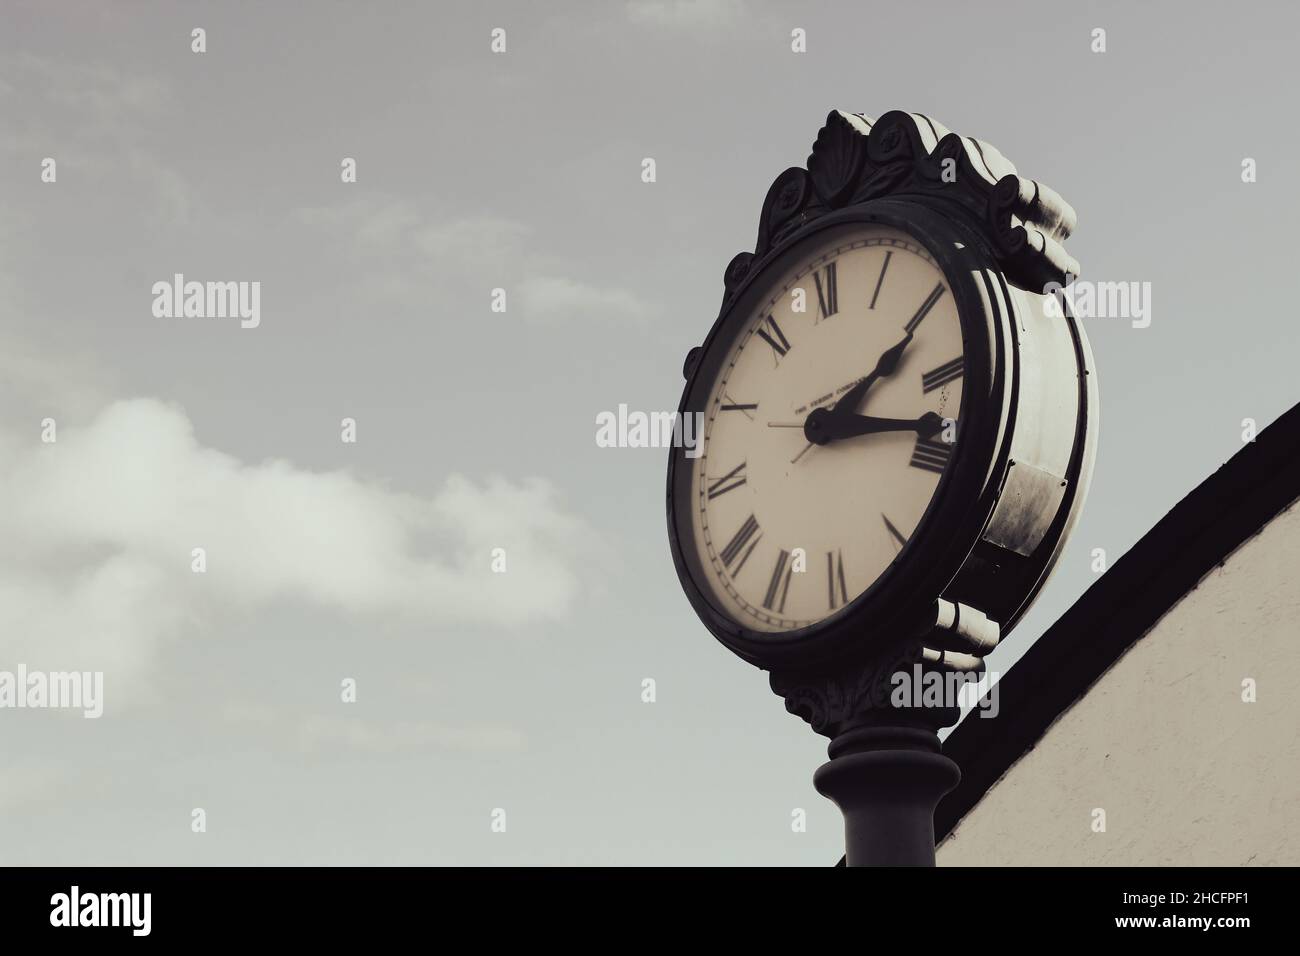 Horloge avec fond ciel gris nuageux. Banque D'Images